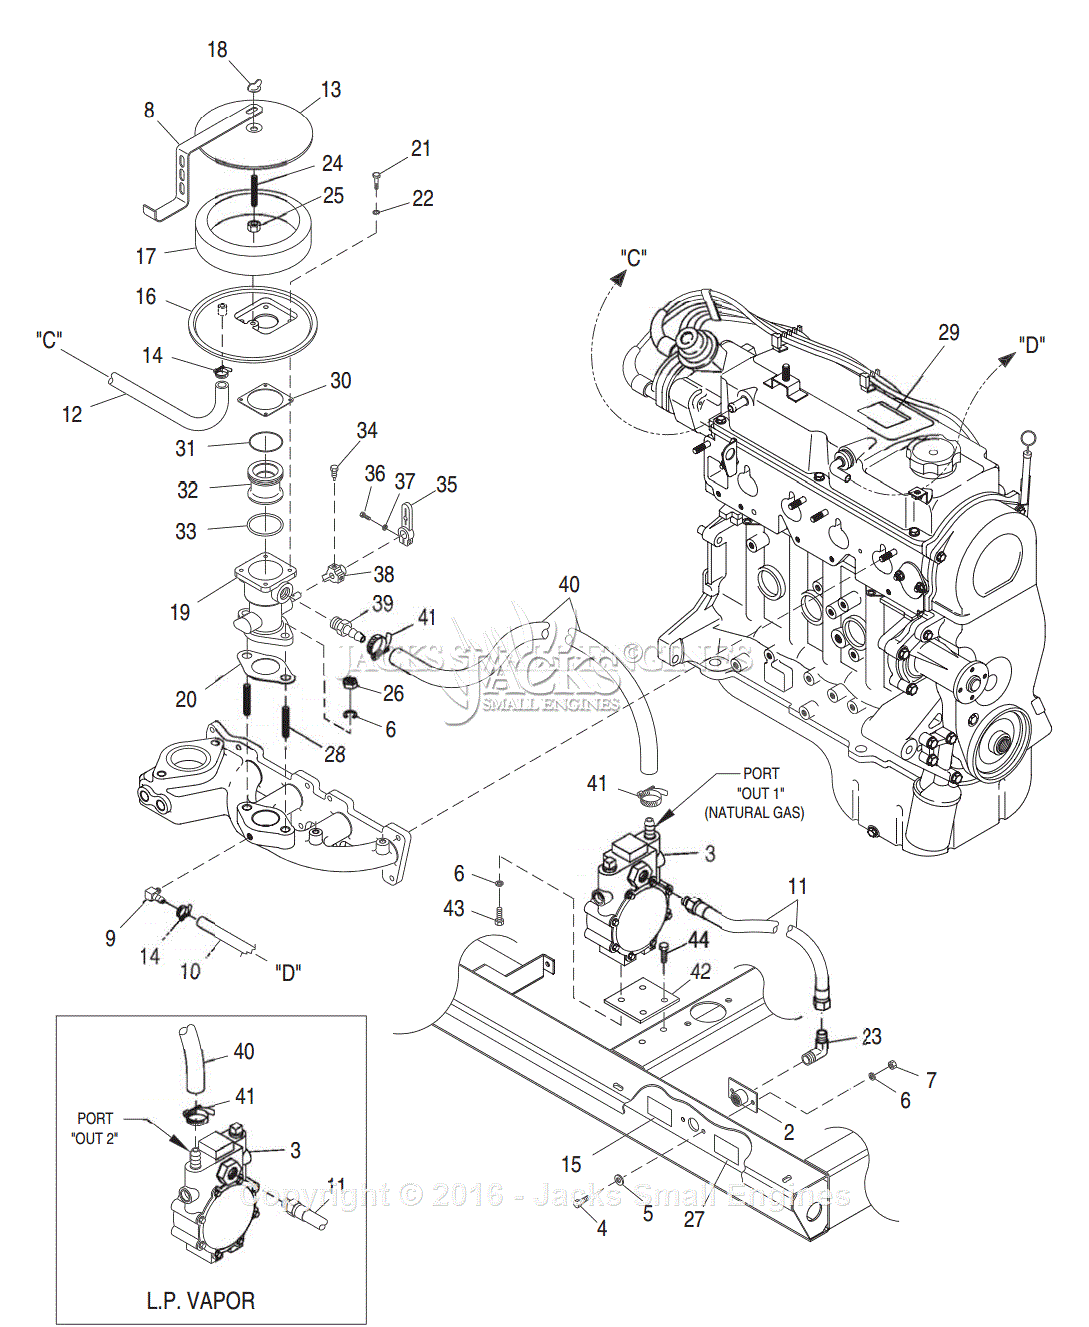 diagram-iveco-engine-fuel-system-diagrams-mydiagram-online